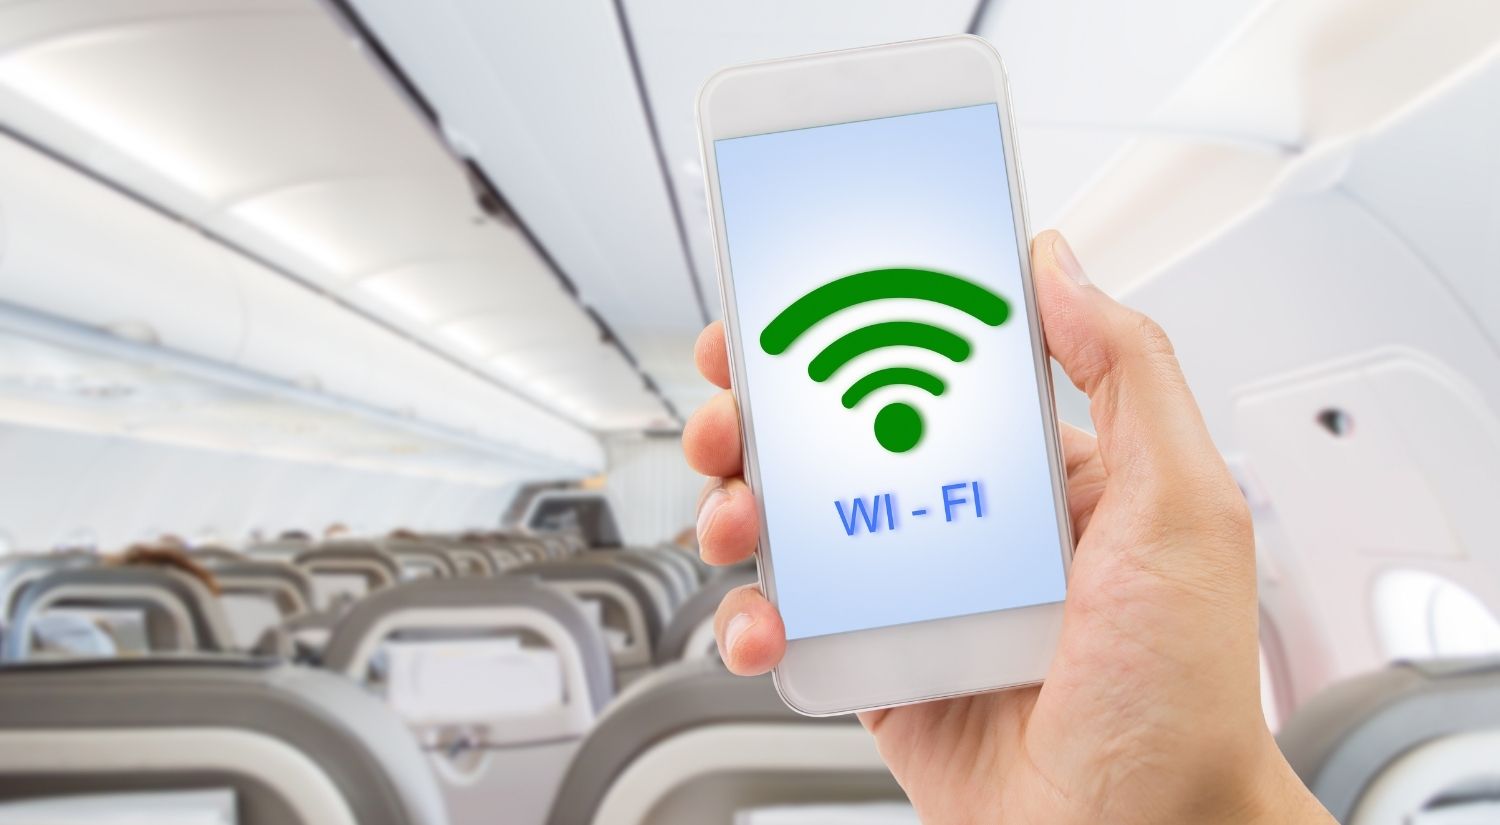 in-flight wifi internet service